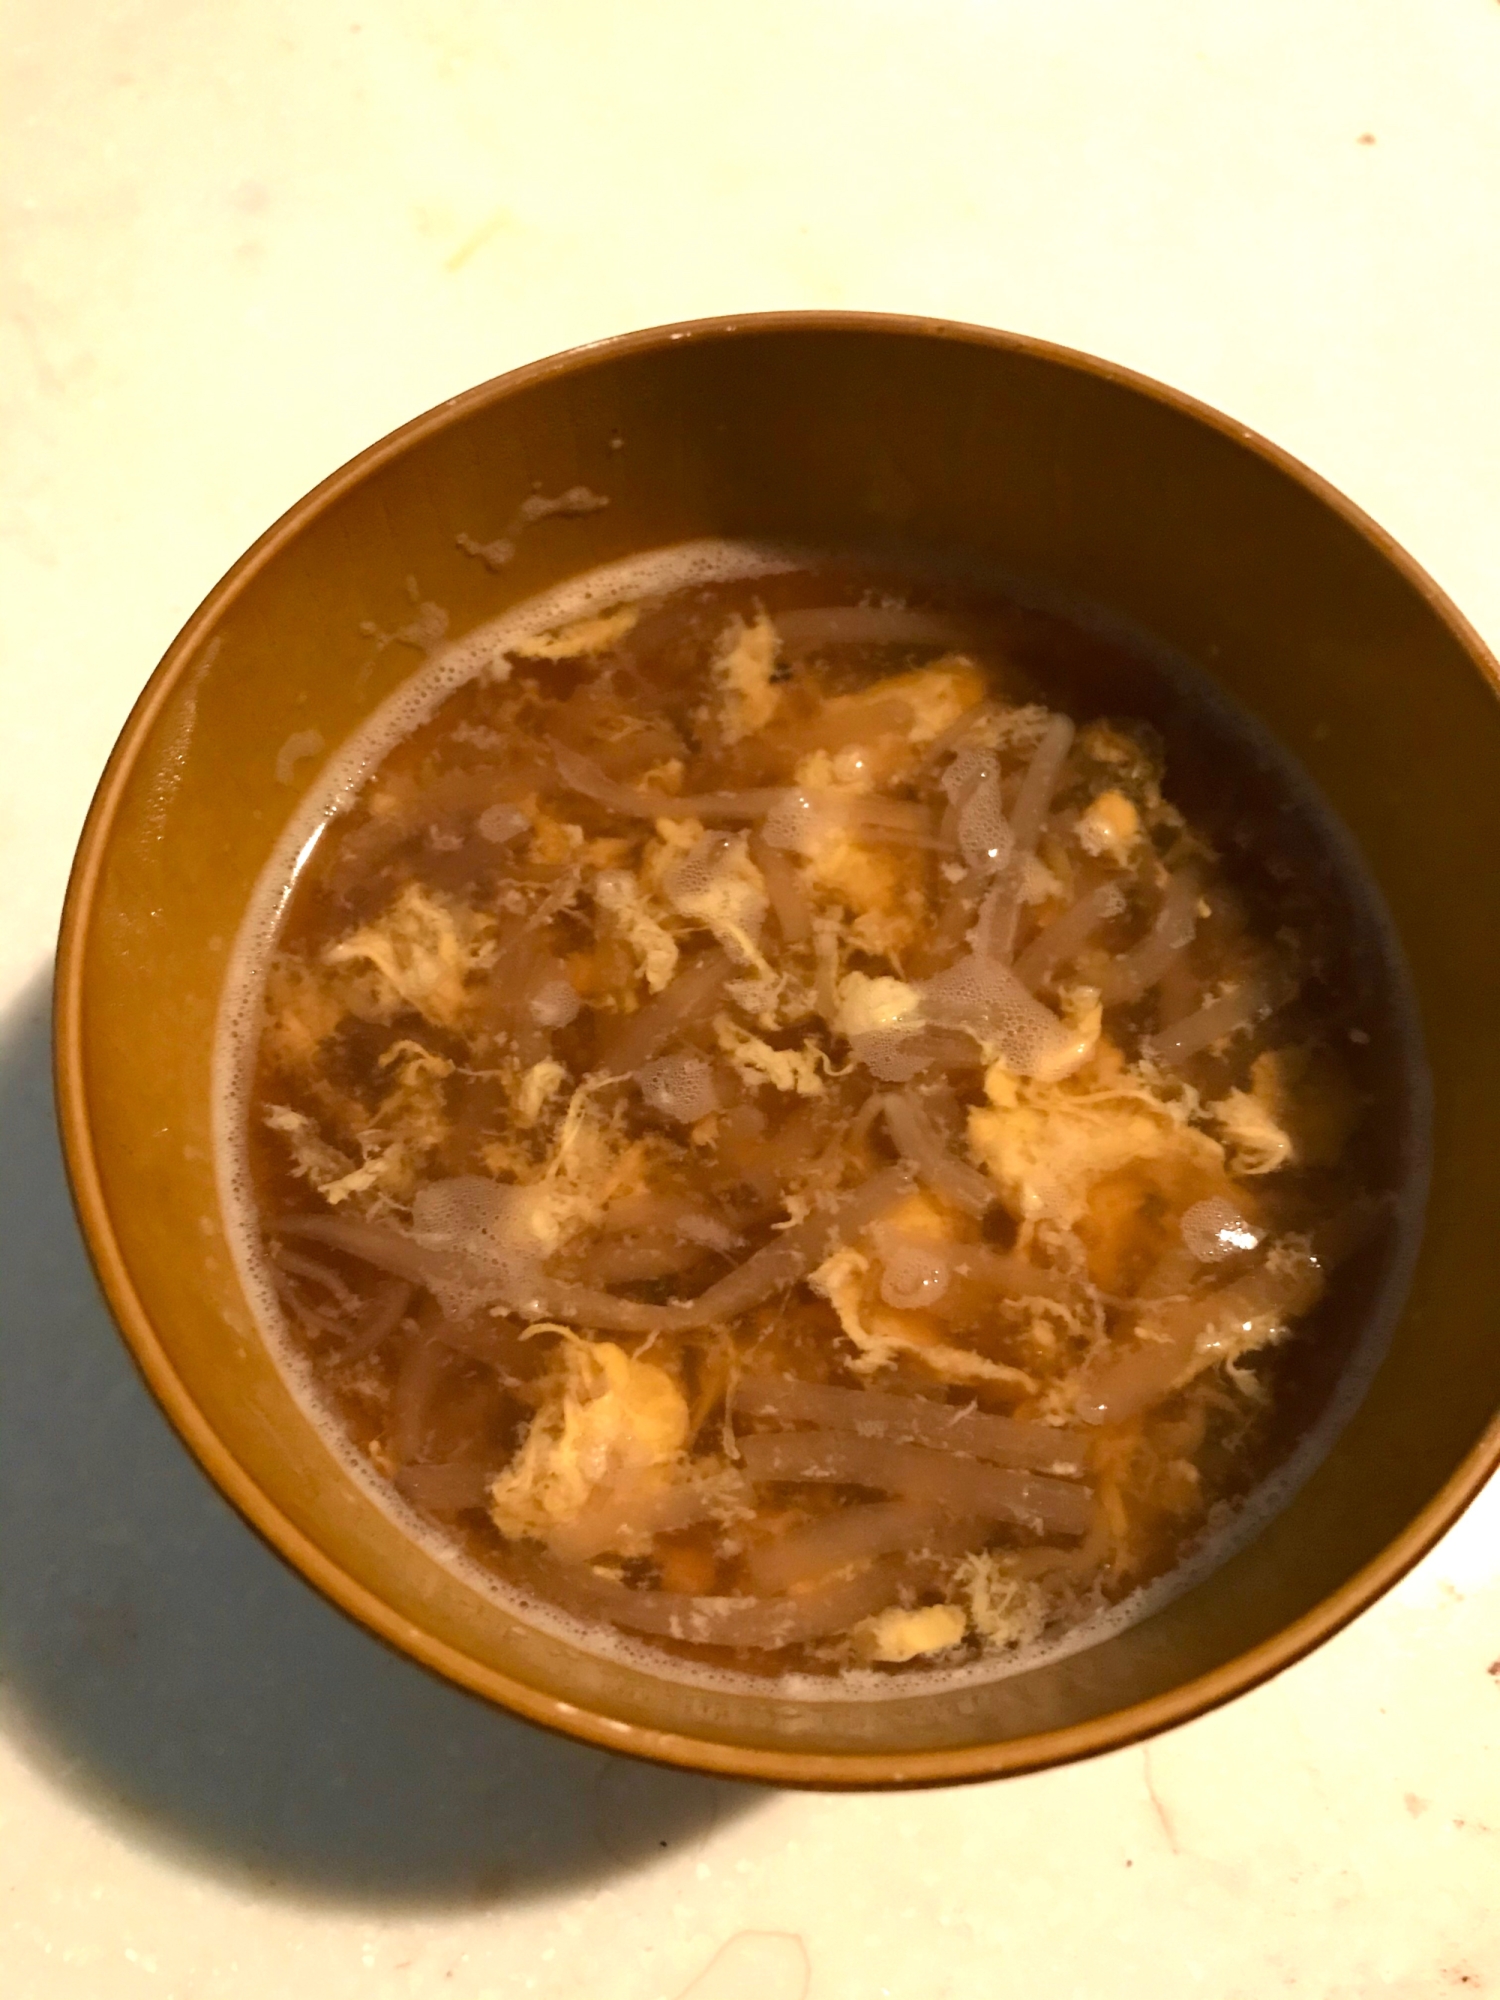 もやしと卵の中華スープ